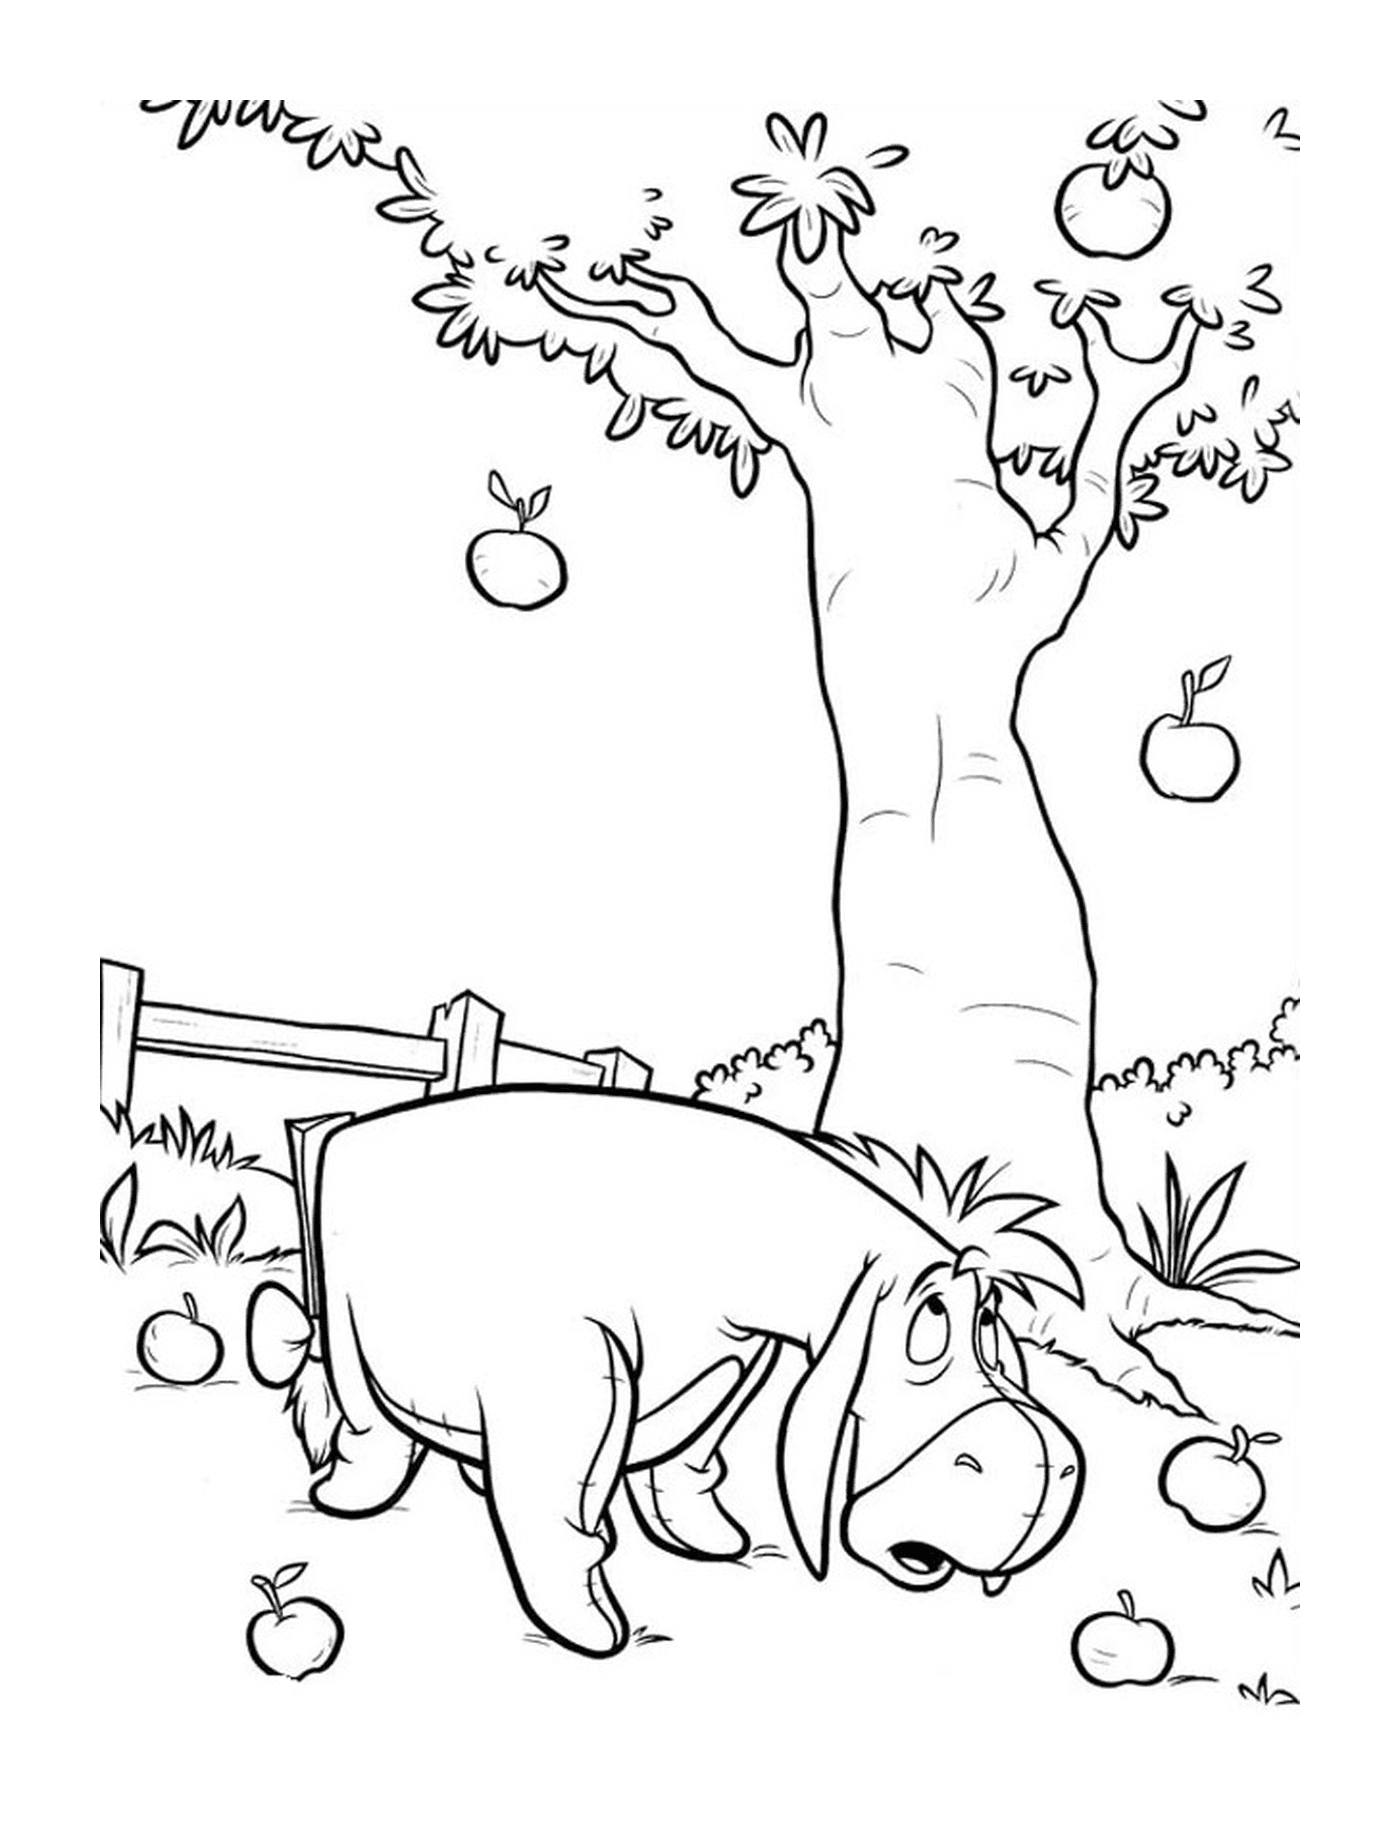  एक दरियाई घोड़ा सेब के पेड़ के बगल में खड़ा है 